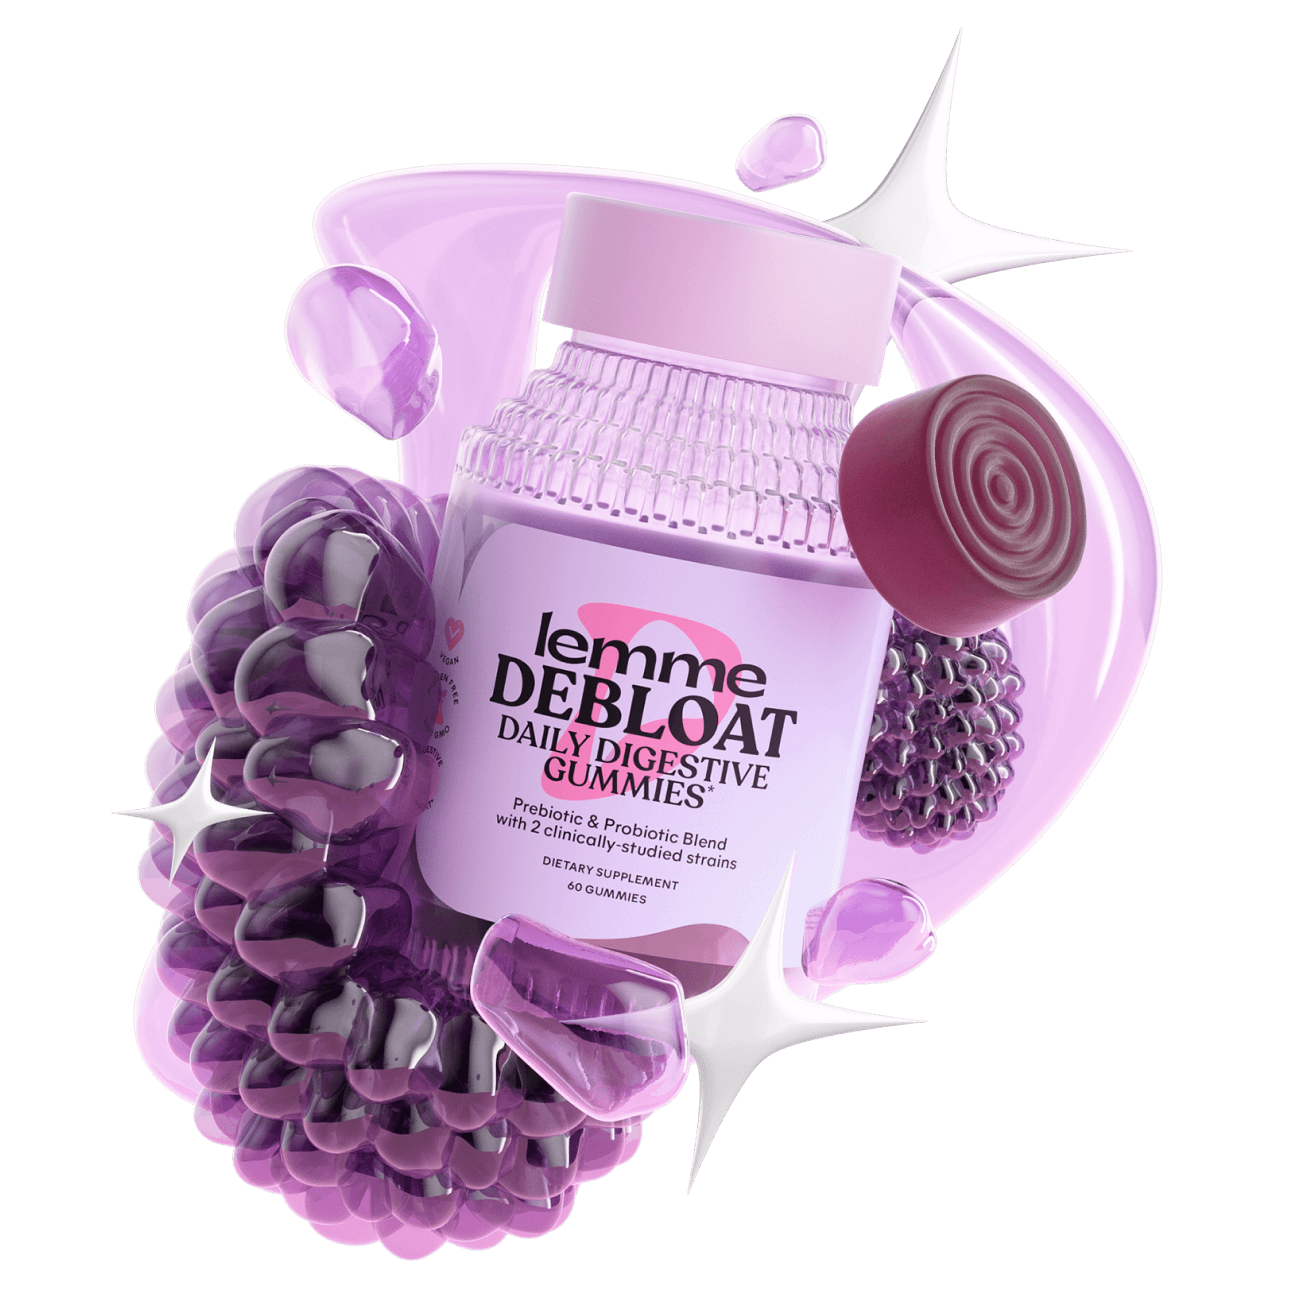 Lemme debloat packaging surrounded by fruit renderings, a purple gummy, and the lemme debloat shape